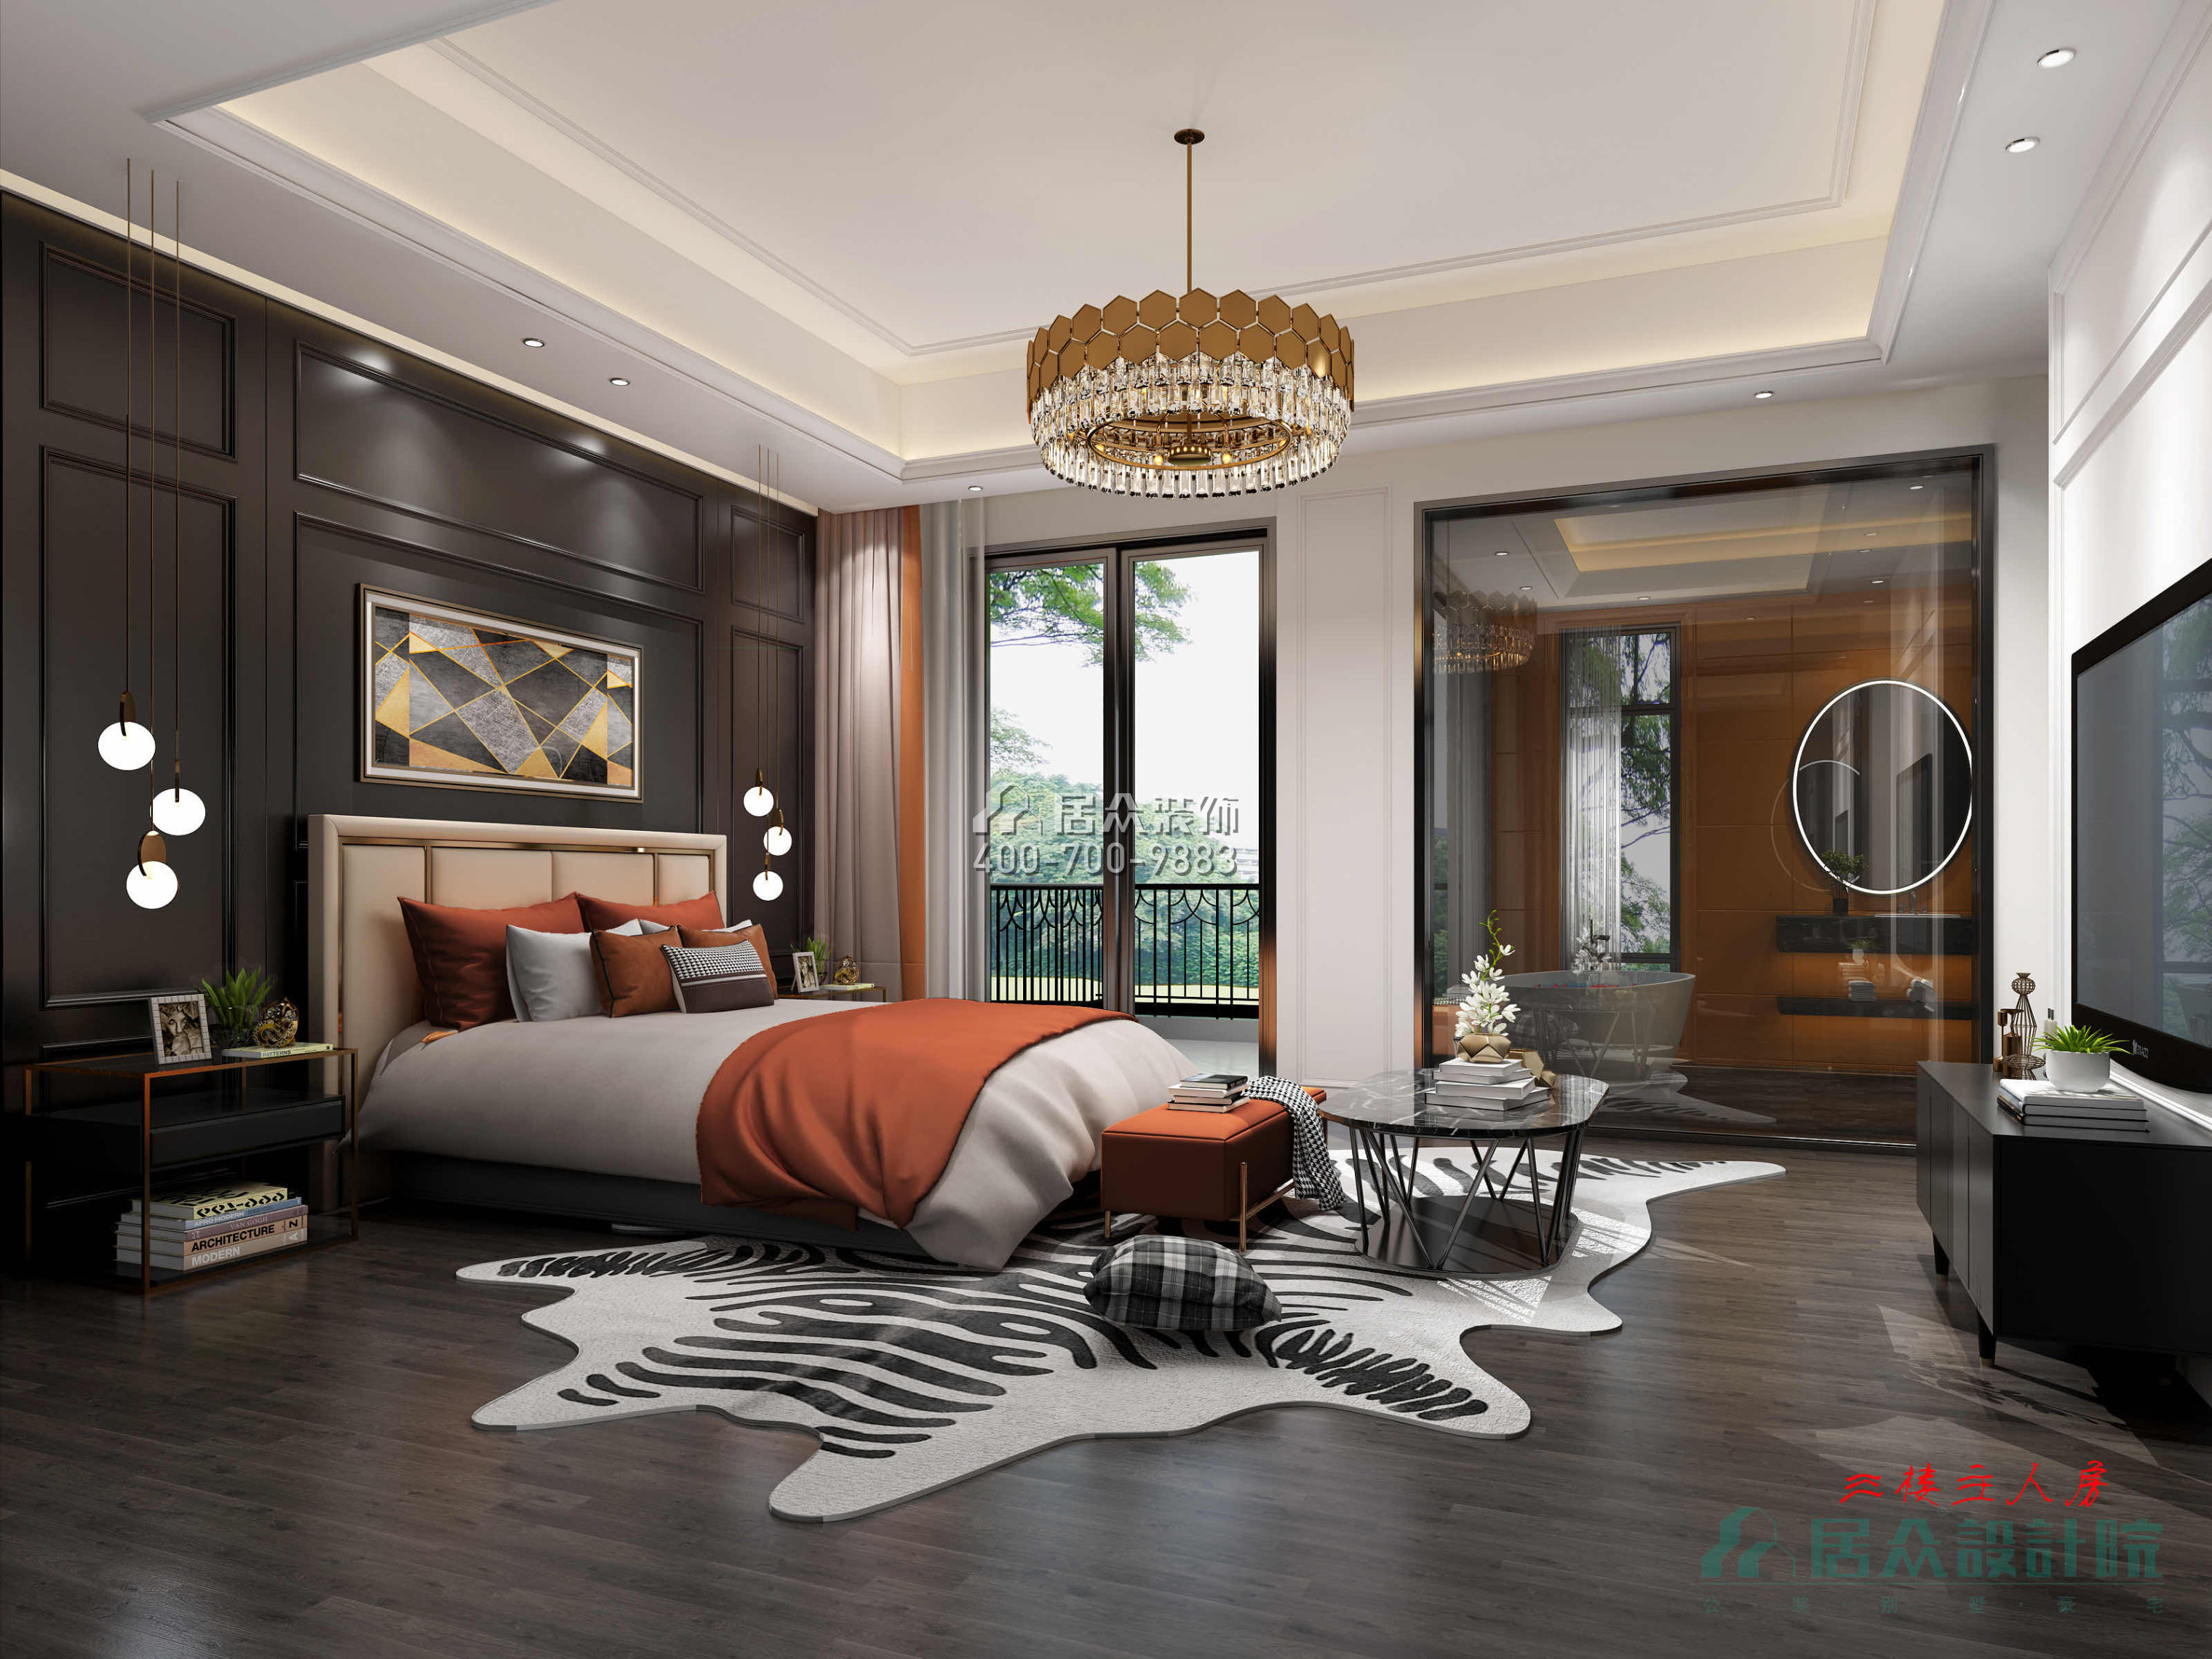 紫檀山700平方米现代简约风格别墅户型卧室装修效果图